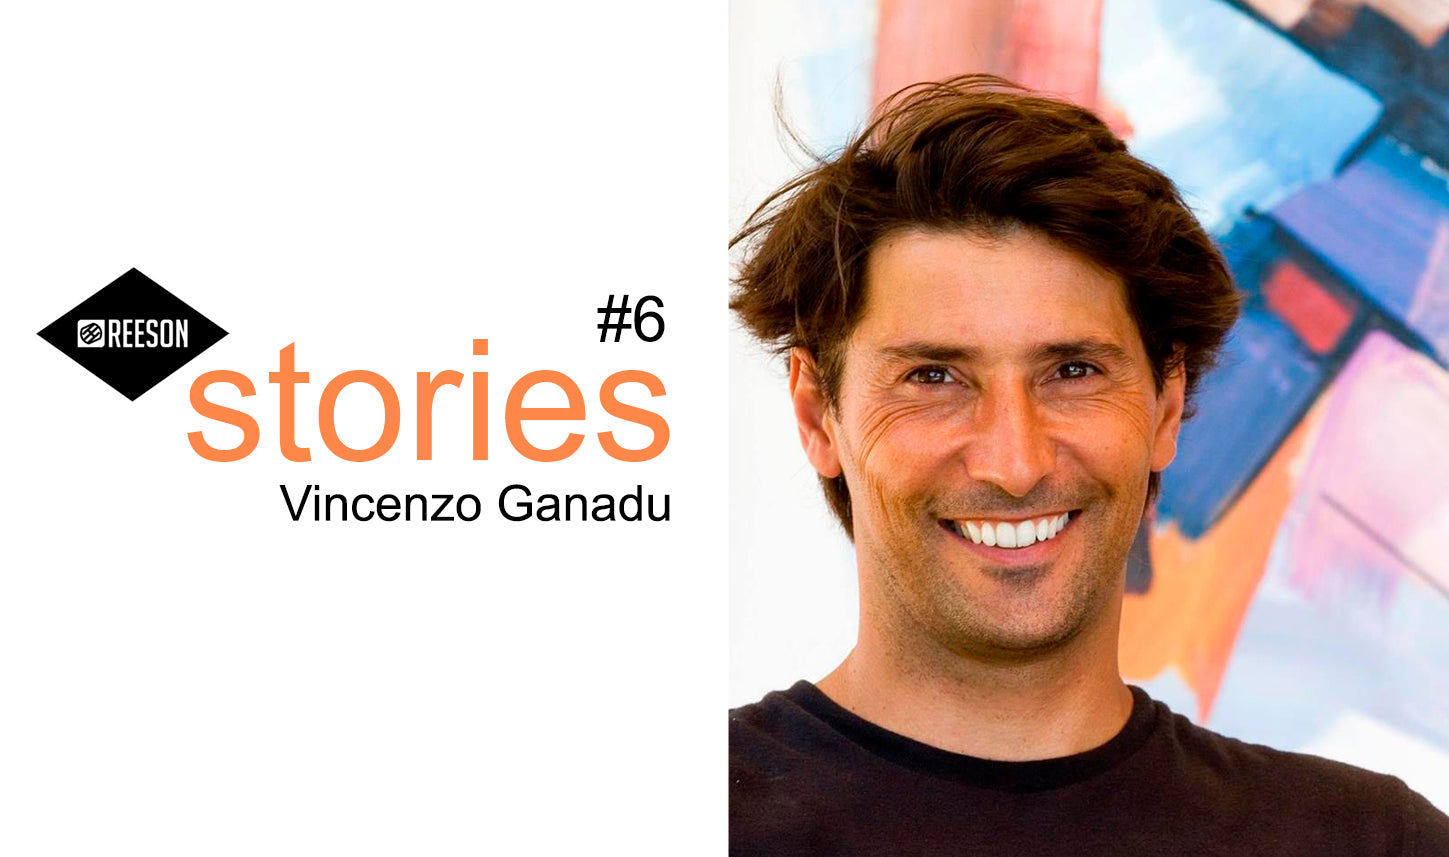 intervista a vincenzo ganadu reeson stories surf